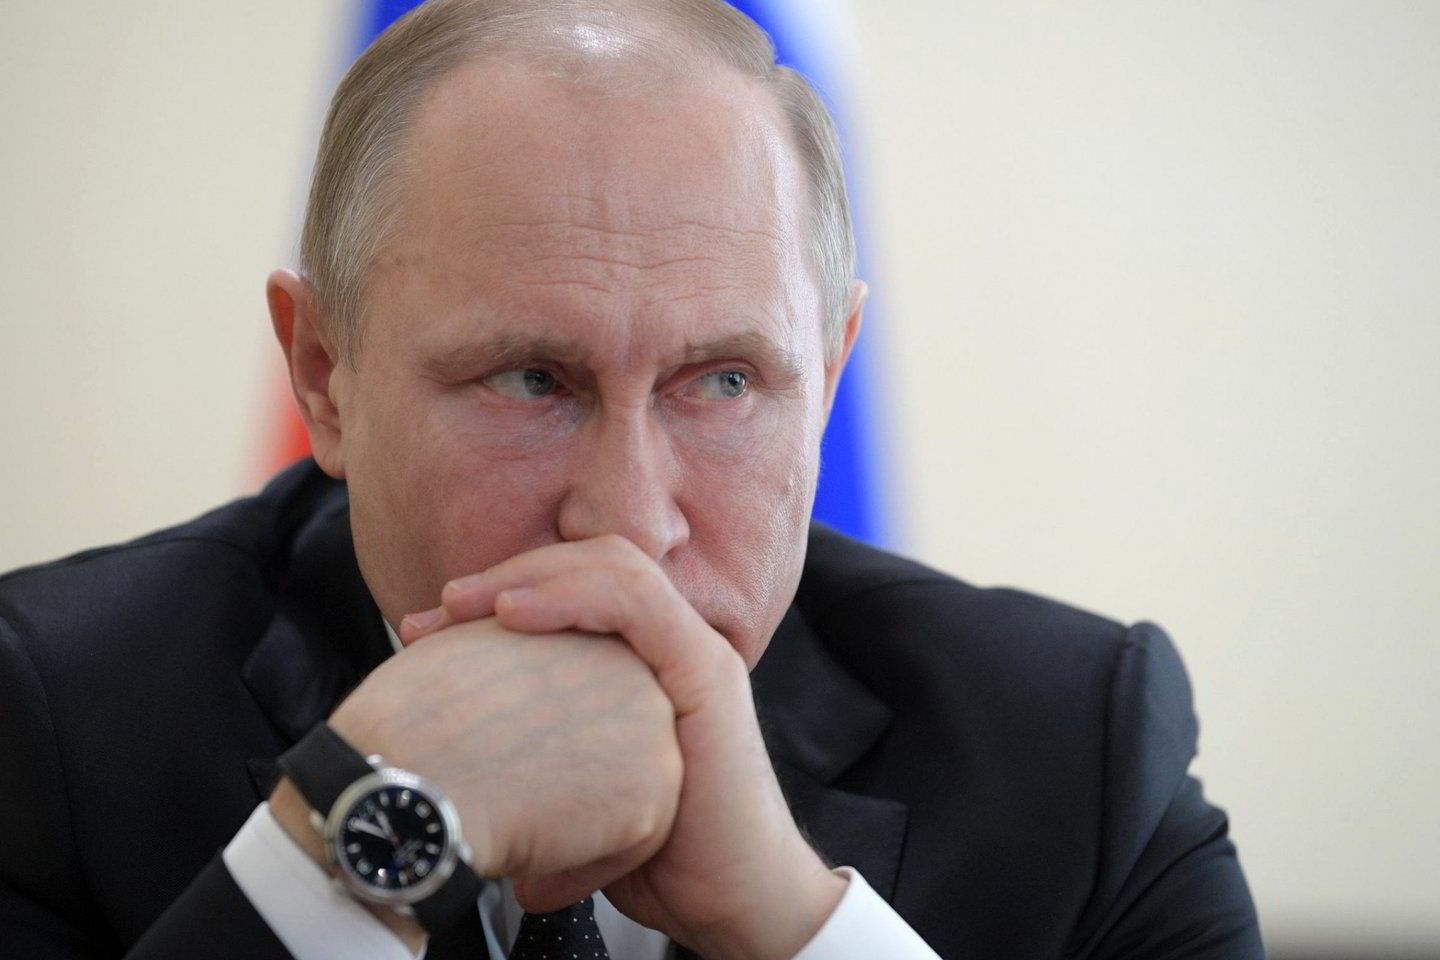  V.Putinas tariamai suerzino D.Trumpą, kai užsiminė apie naujus Rusijos branduolinius ginklus.<br> Sputnik/Scanpix nuotr.